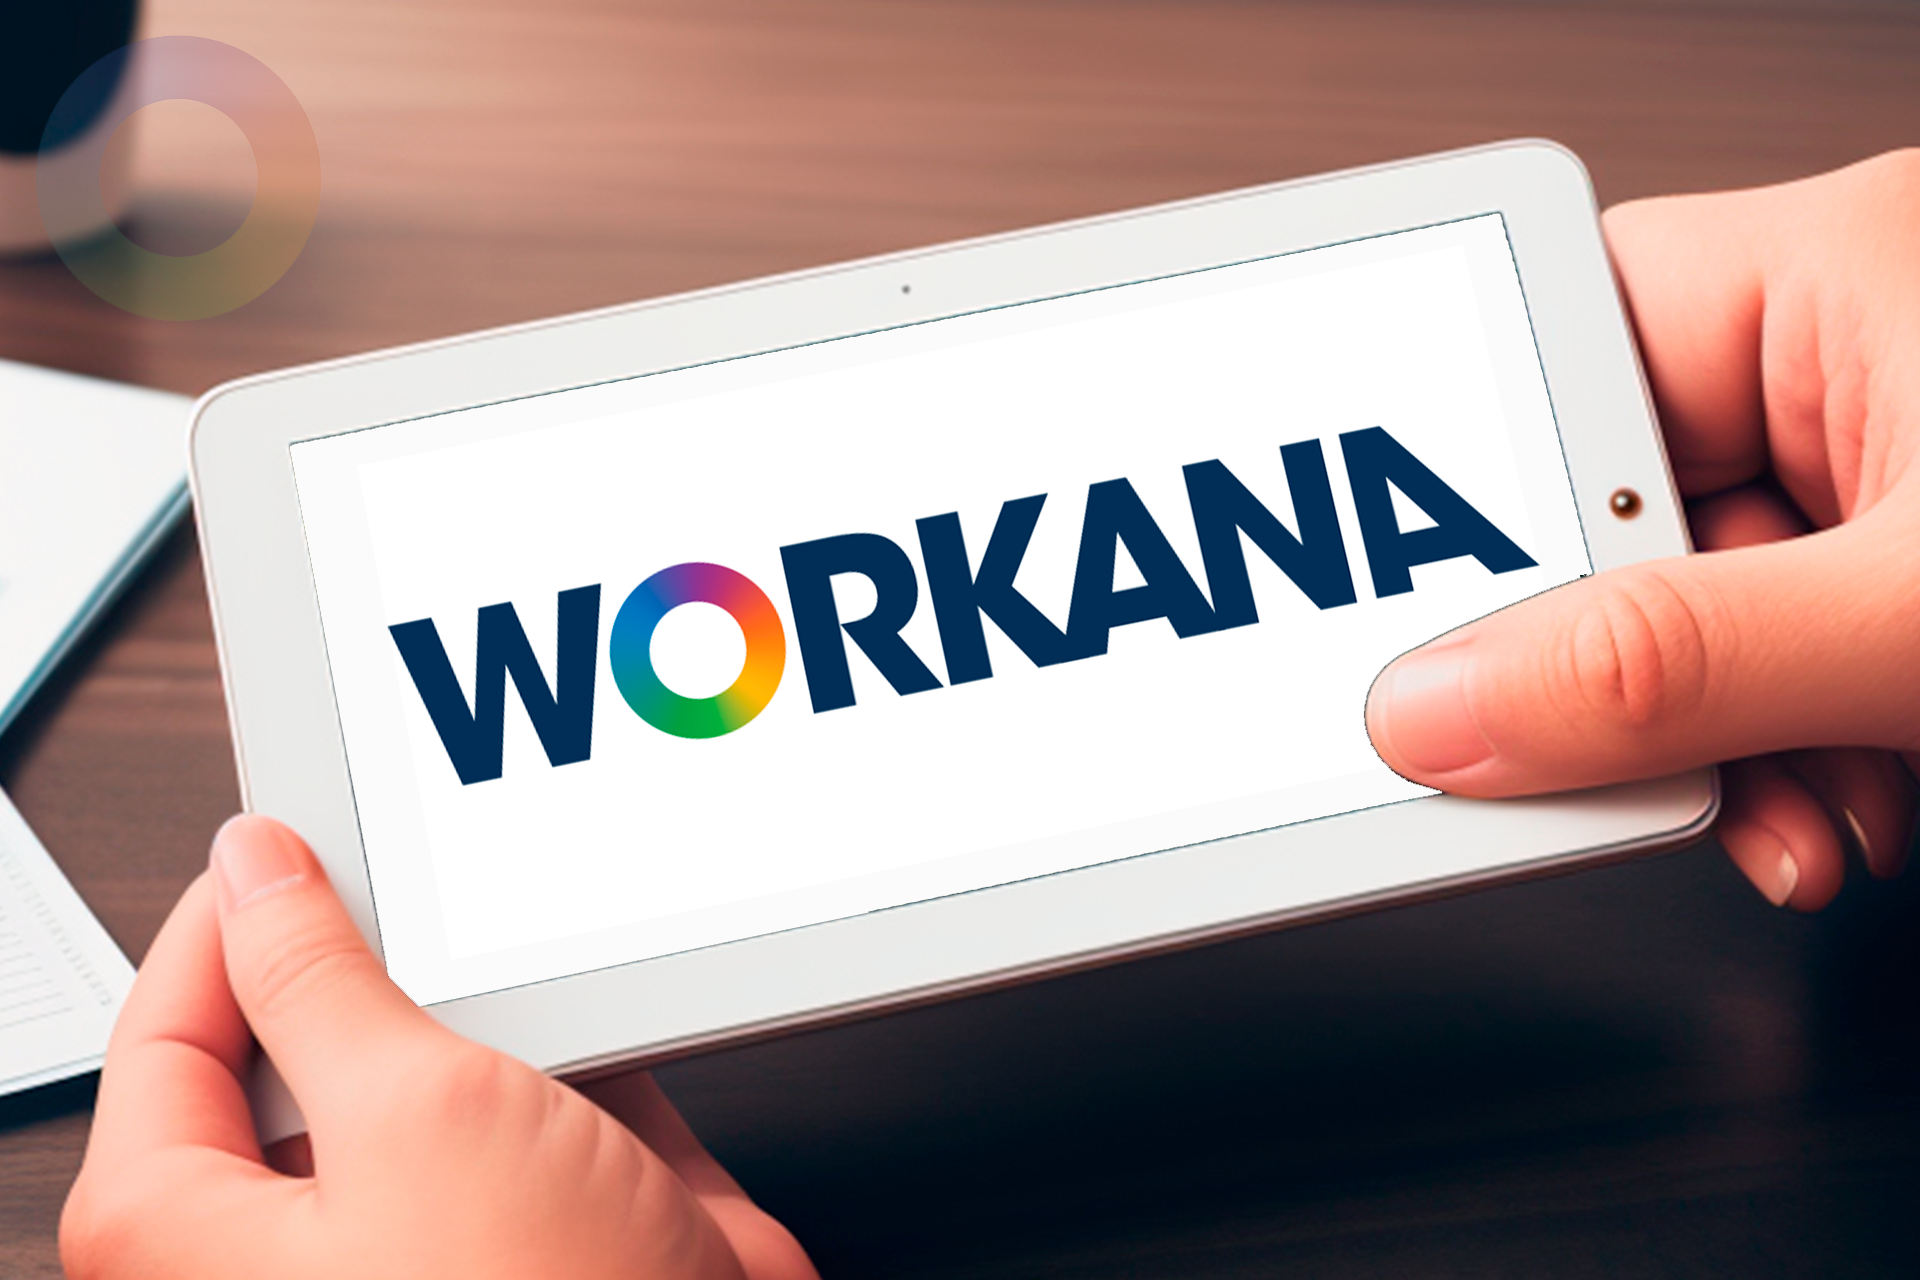 Workana: Análise Completa Sobre a Plataforma para Freelancers e Empresas